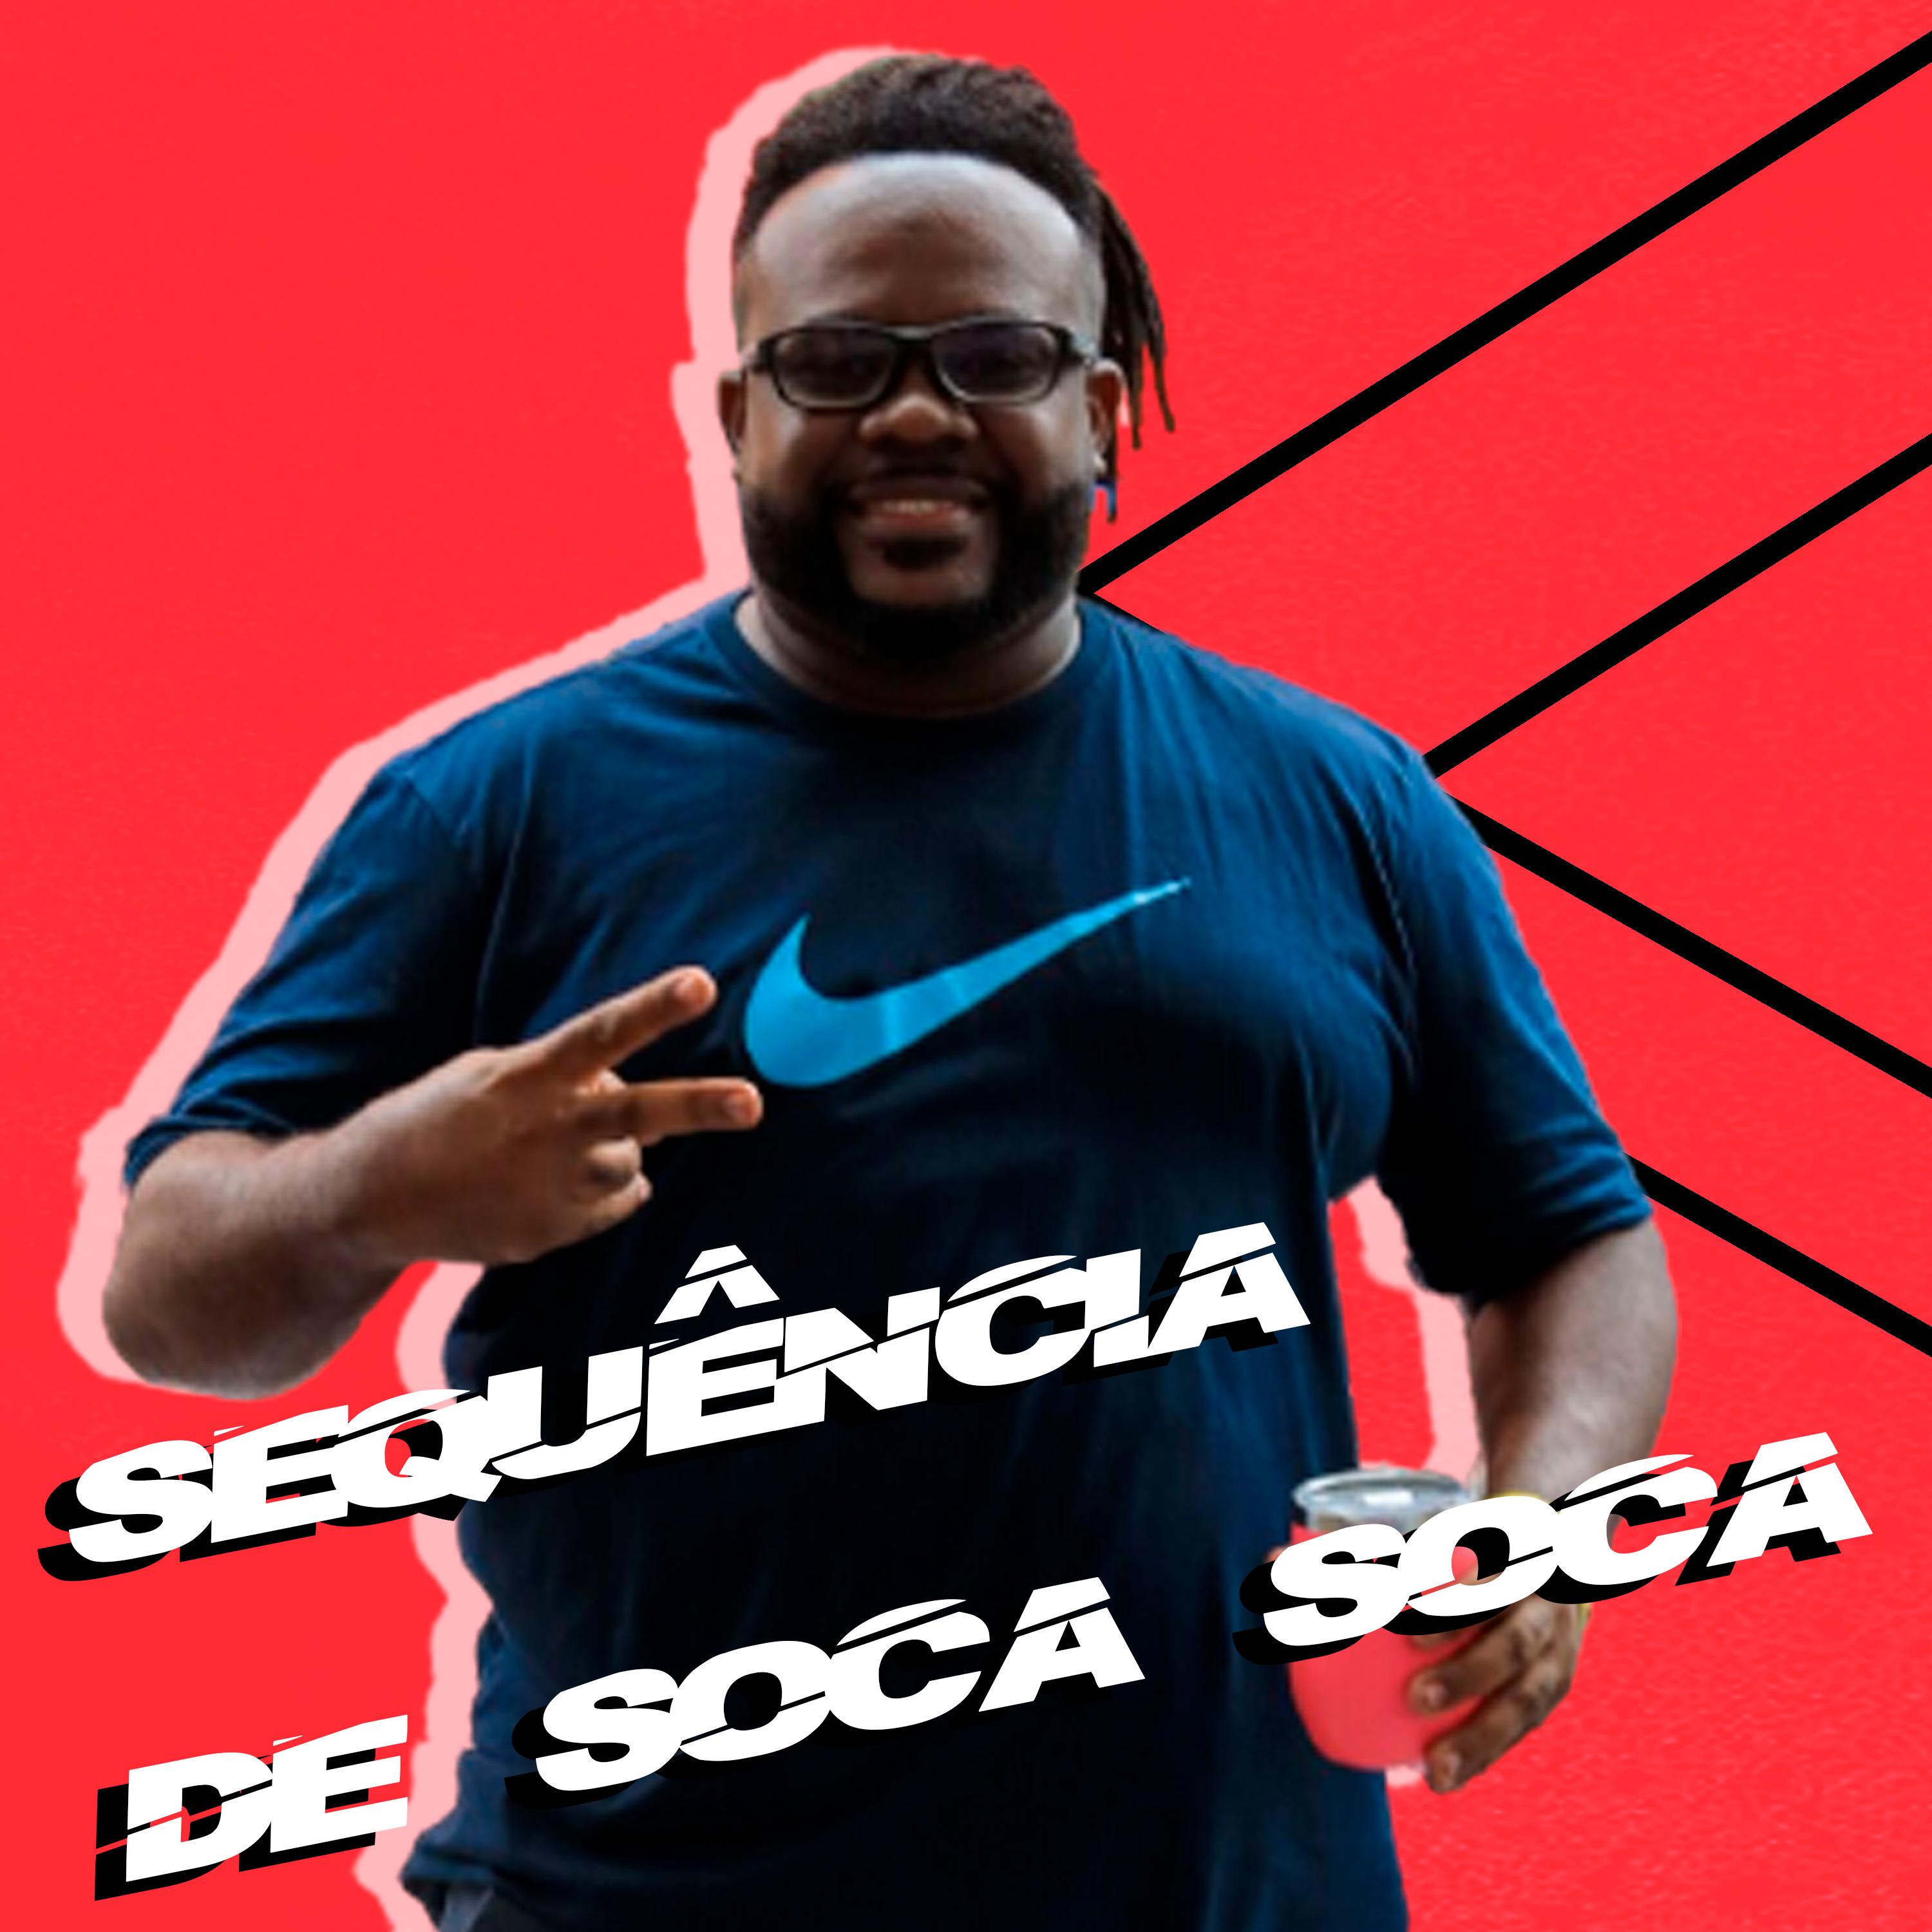 Постер альбома Sequência de Soca Soca